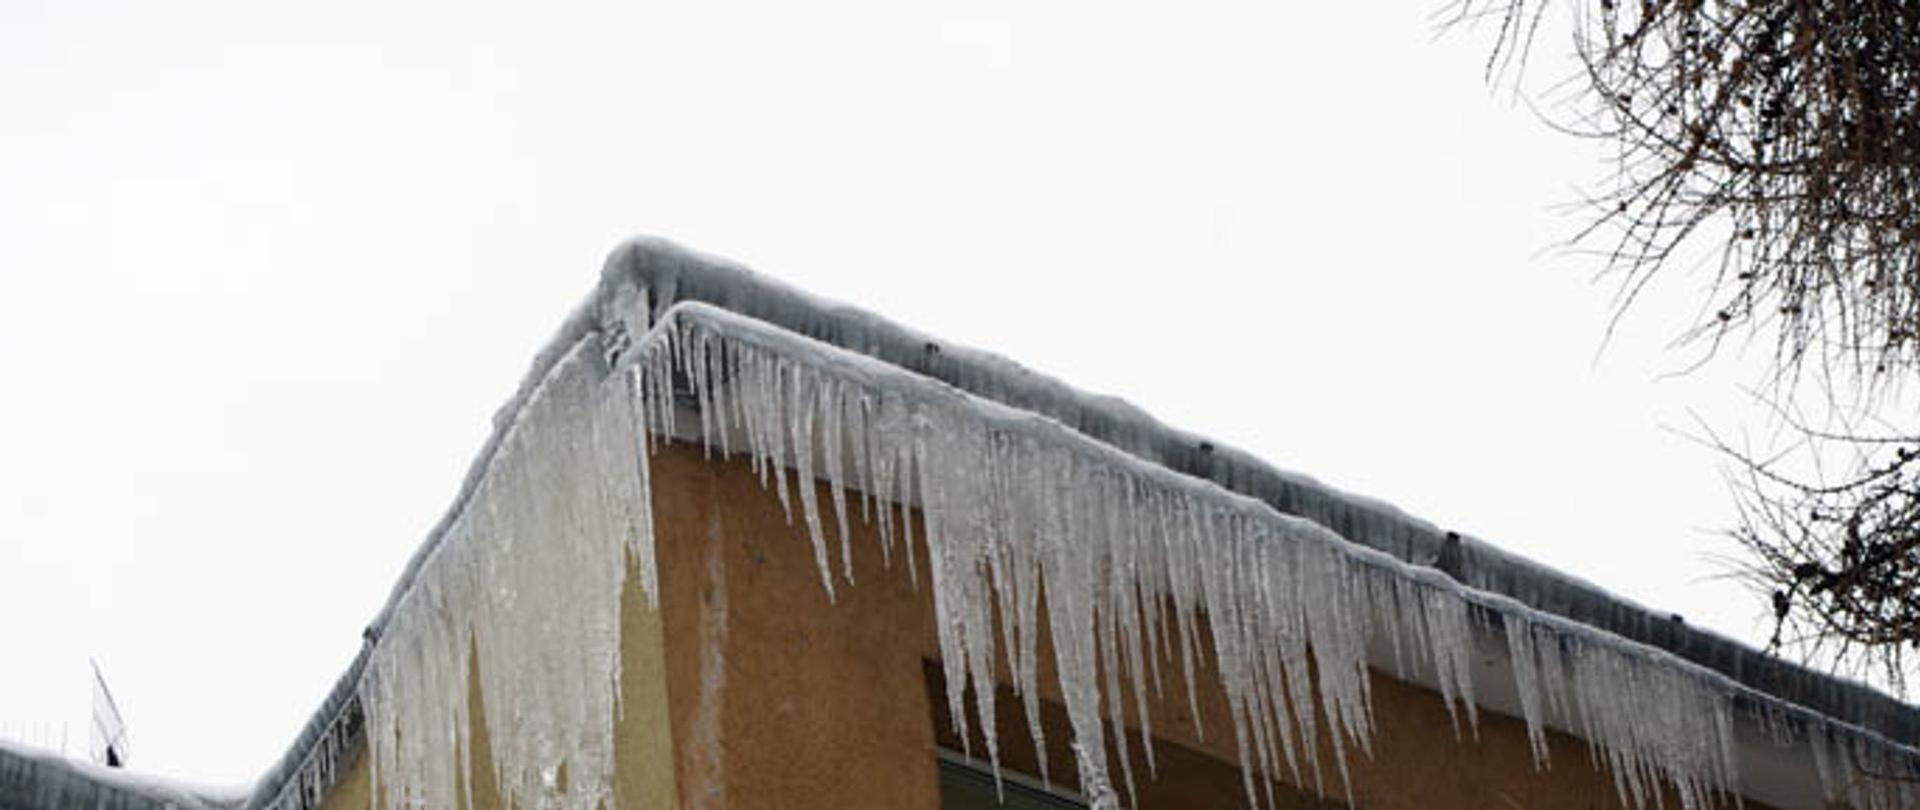 Zdjęcie przedstawia sople lodu zwisające z krawędzi dachu budynku i rynien